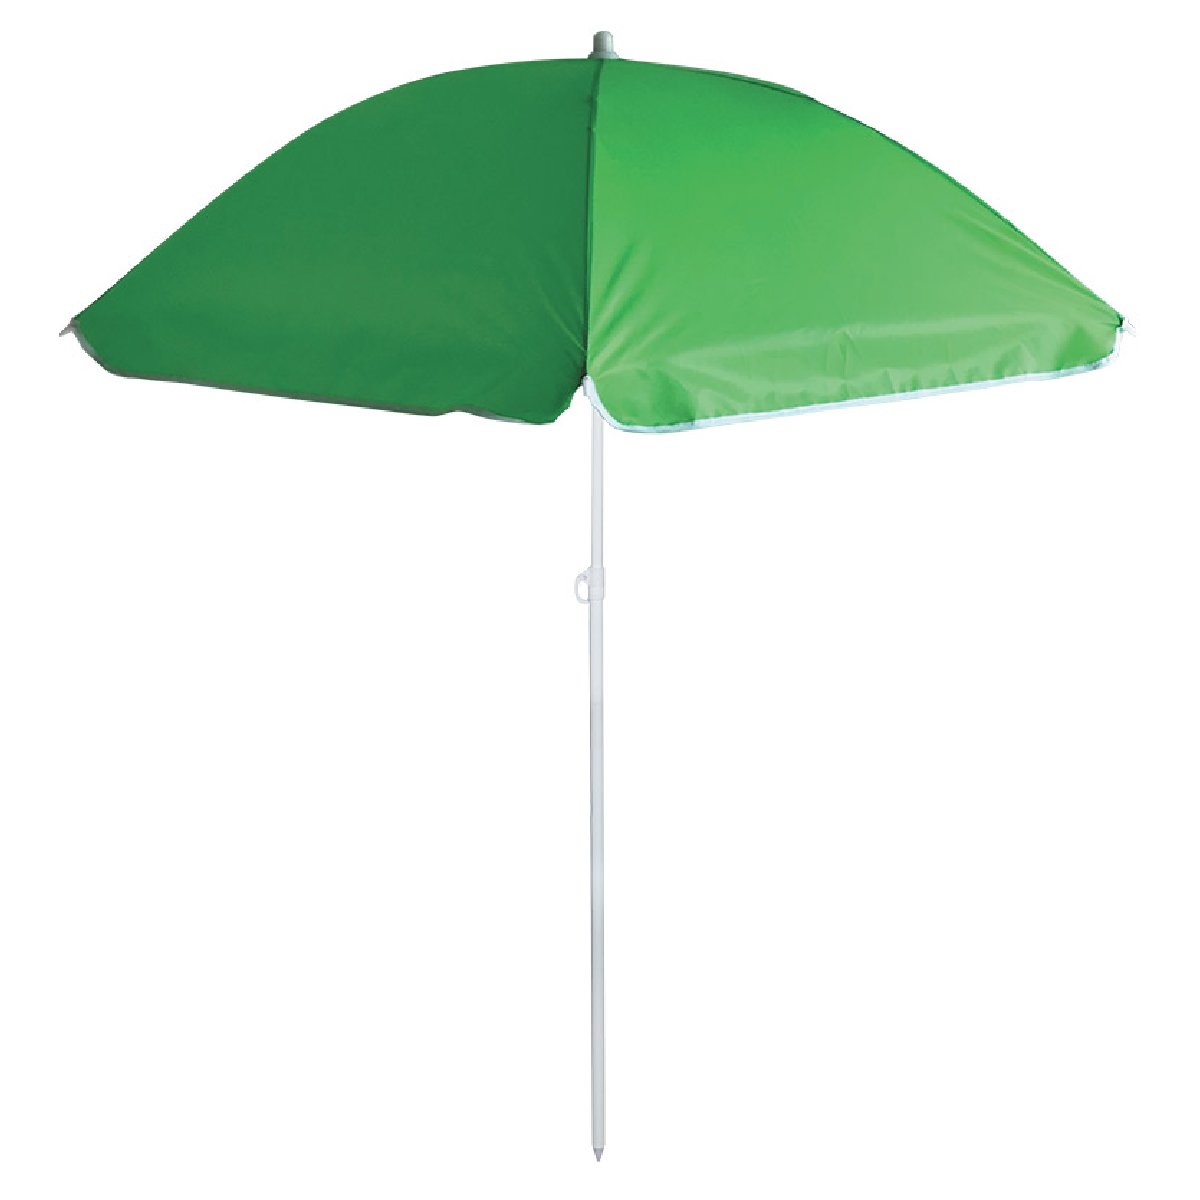 Зонт пляжный BU-62 диаметр 140 см, складная штанга 170 смКупить